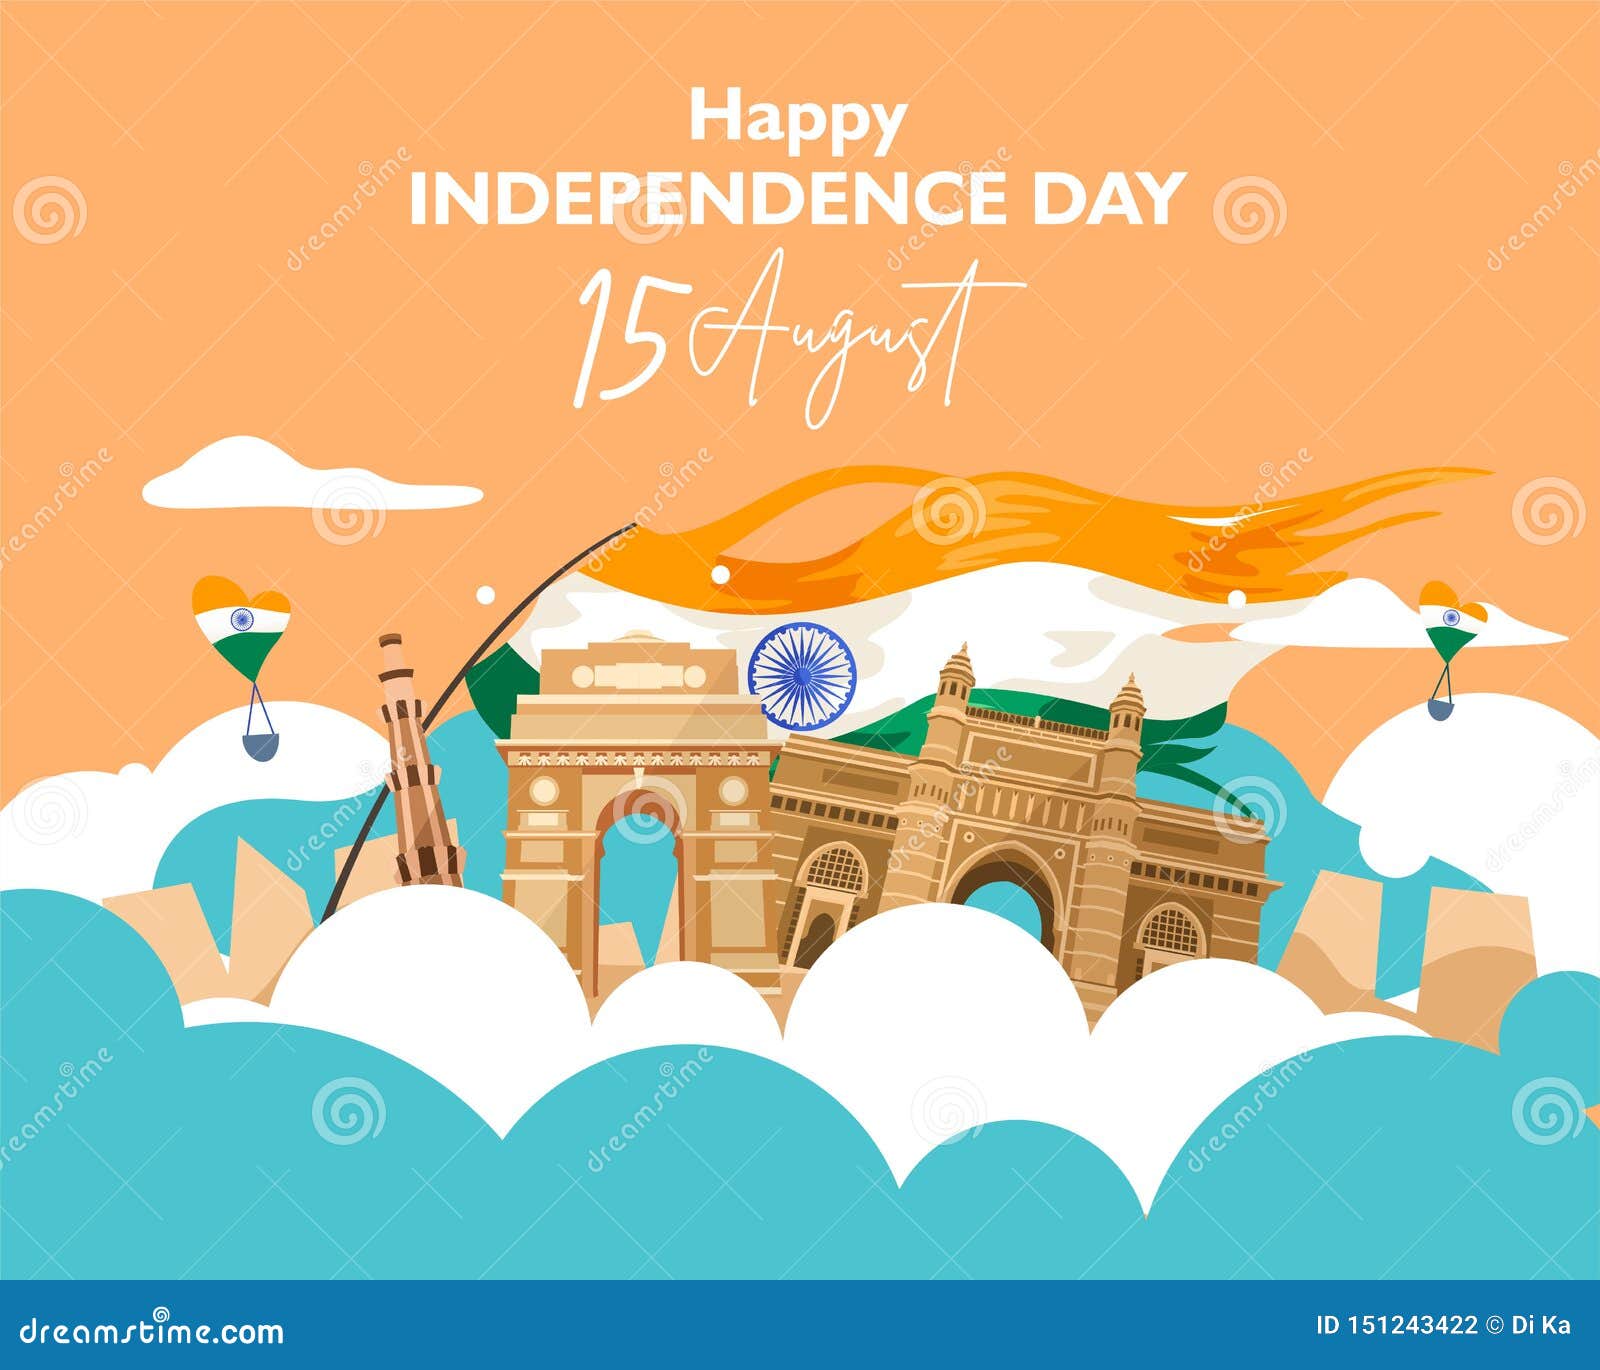 Hãy cùng chúc mừng Ngày Độc lập Ấn Độ với chúng tôi! Đây là ngày quan trọng và ý nghĩa trong lịch sử đất nước Ấn Độ và chúng ta cùng nhau kỷ niệm ngày này bằng những hình ảnh tuyệt đẹp. 